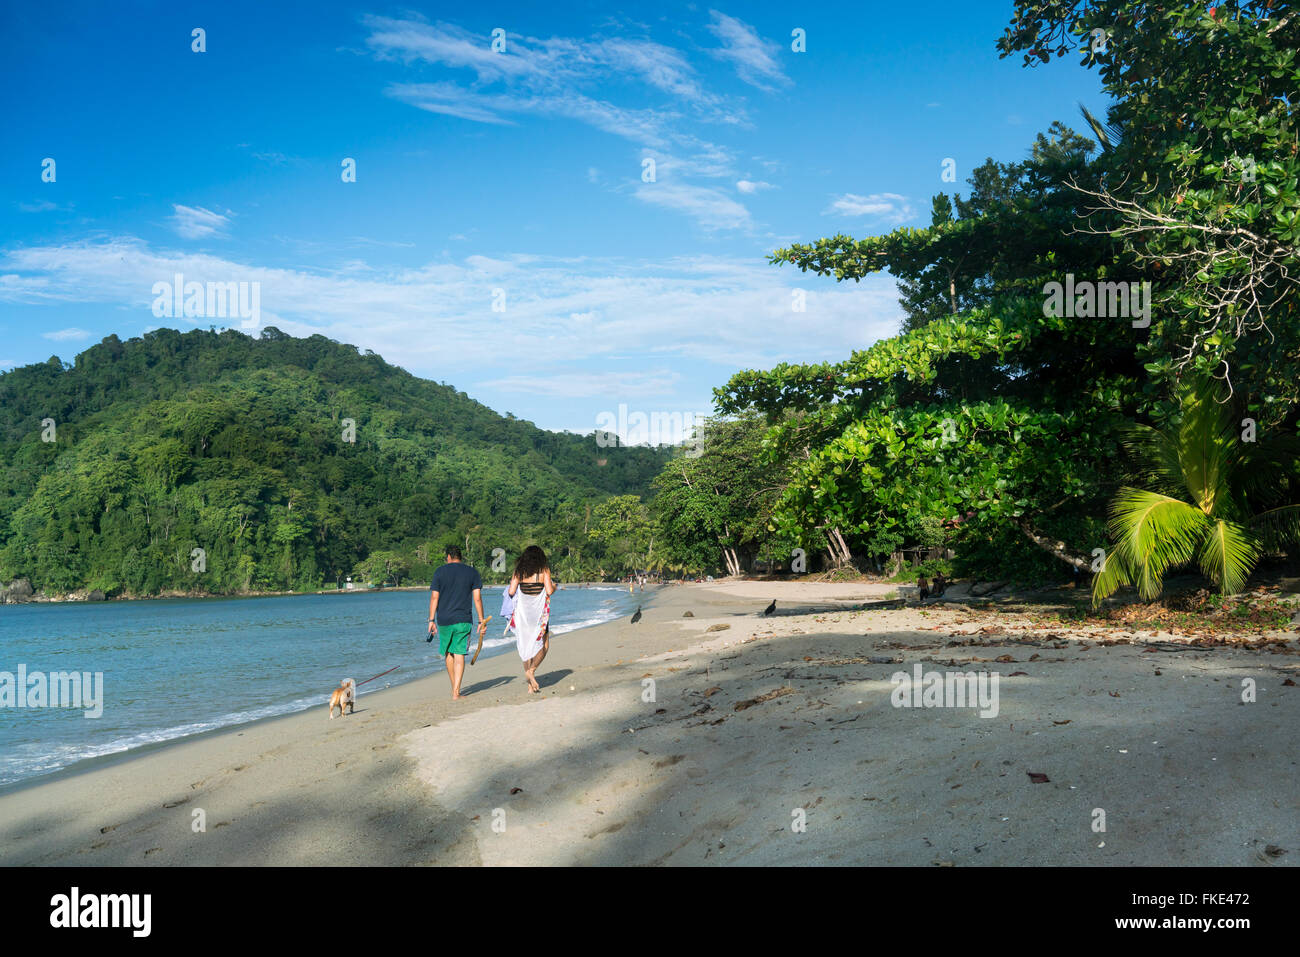 Vista posteriore del giovane con il cane a camminare sulla spiaggia di sabbia, Trinidad, Trinidad e Tobago Foto Stock